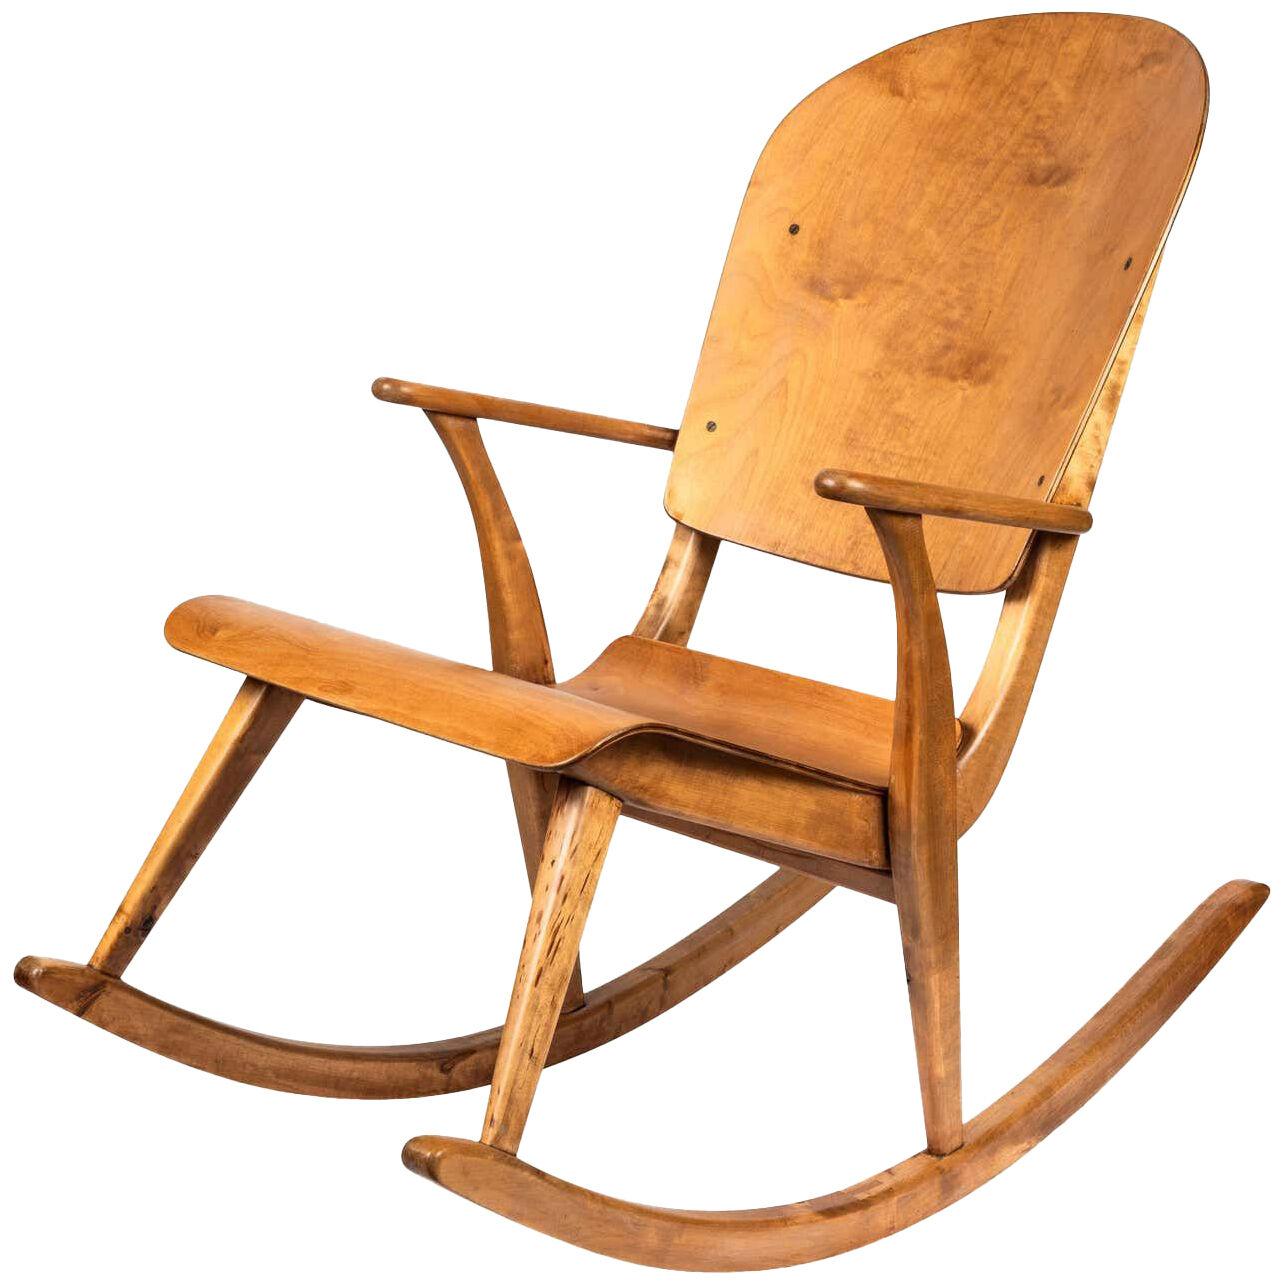 Rare 1940s Rocking Chair by Ilmari Tapiovaara